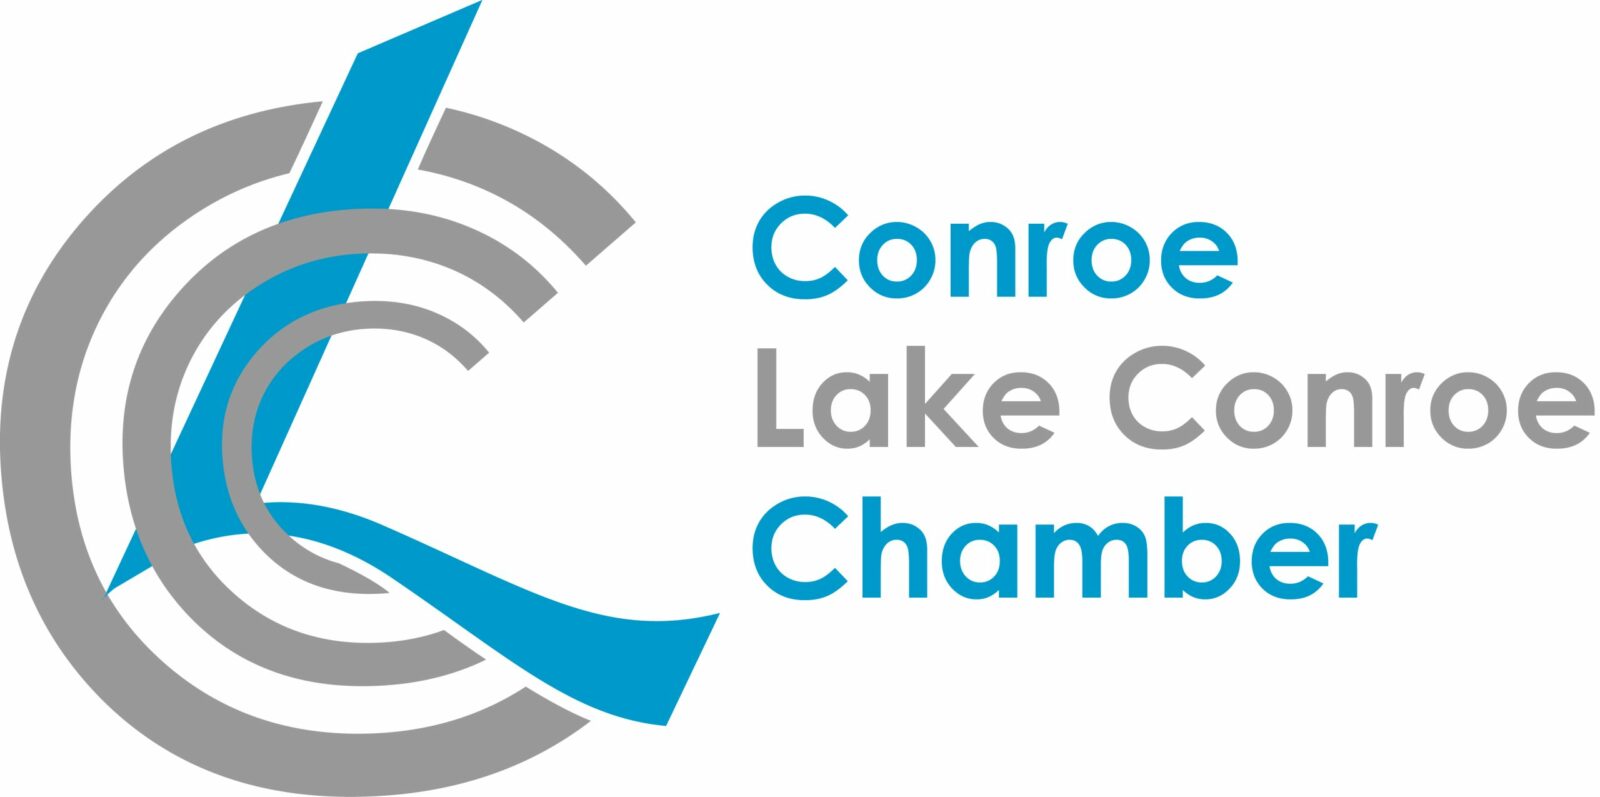 Conroe Lake Conroe Chamber logo